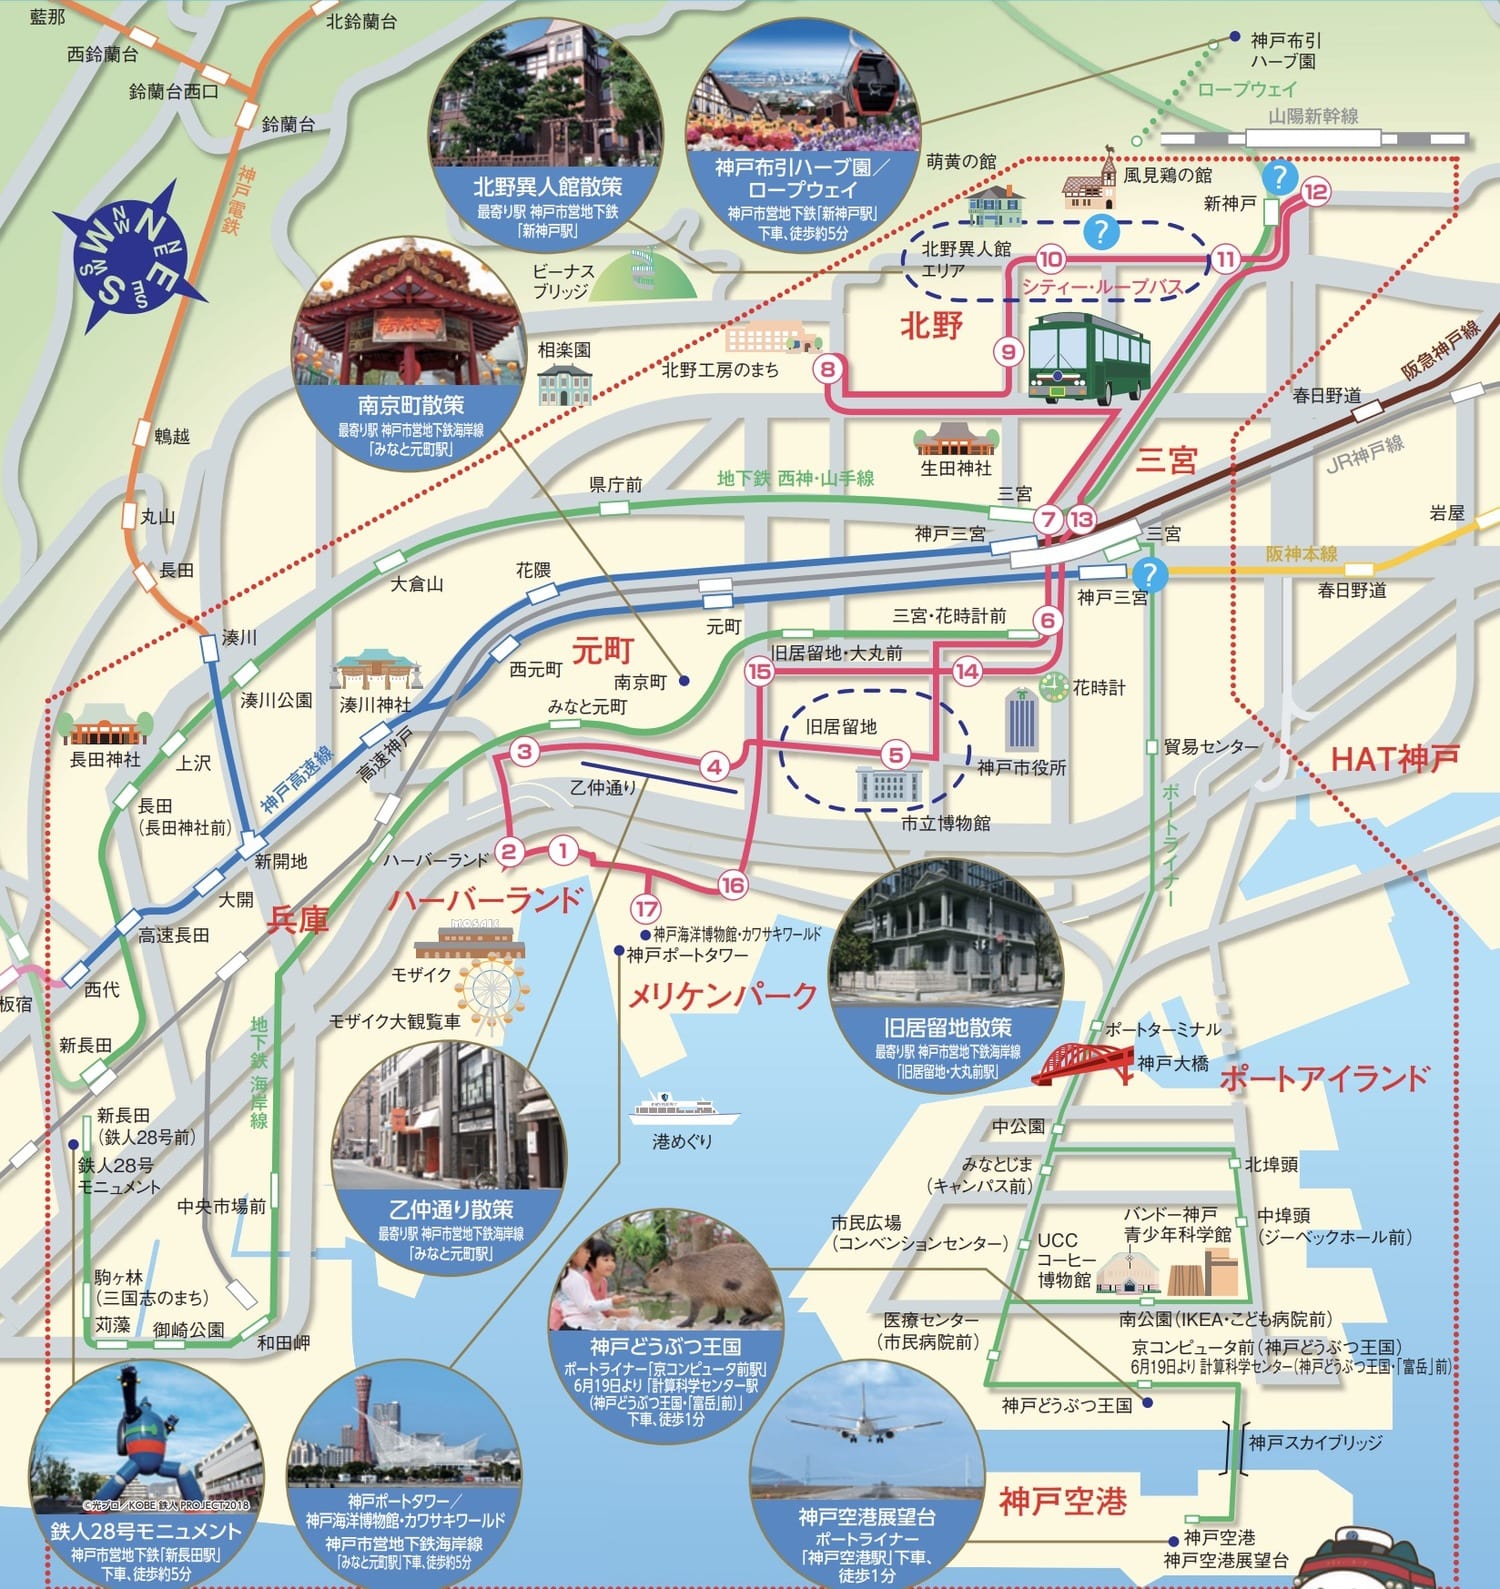 神戶街巡遊一日優惠券(神戸街めぐり1dayクーポン)版本、使用區間、購買地點